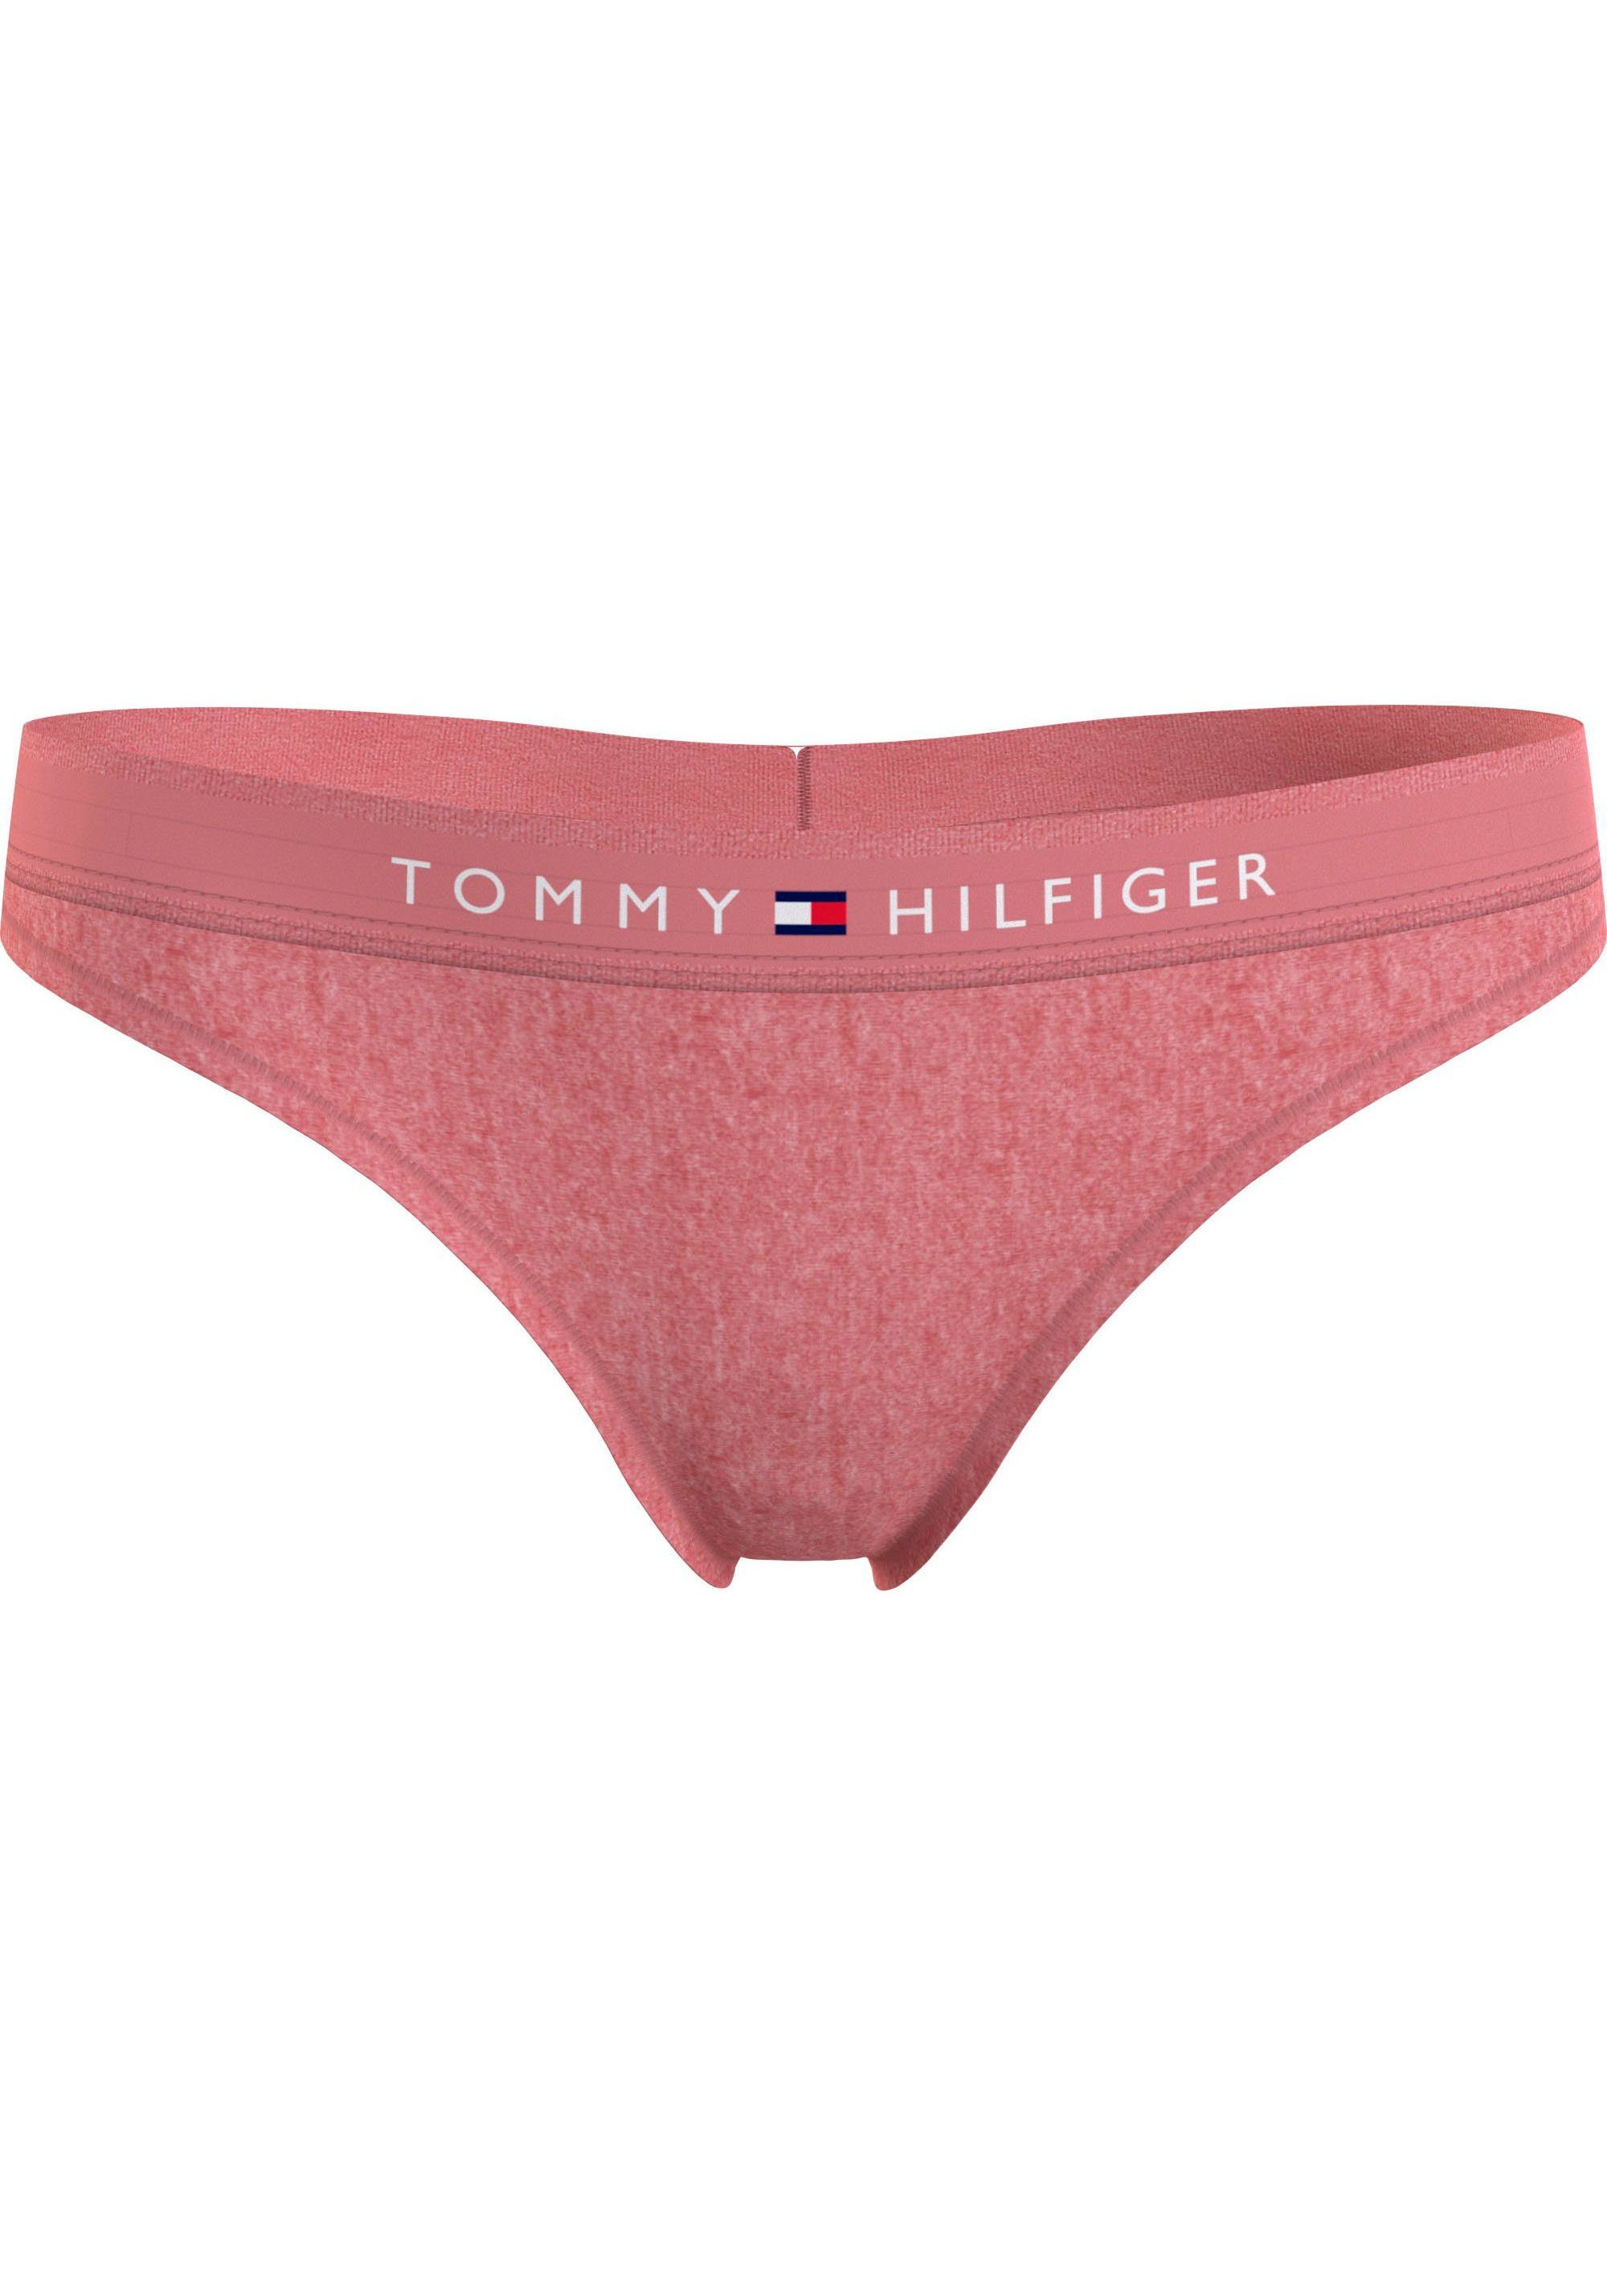 Tommy Hilfiger Underwear T-String THONG (EXT SIZES) mit Tommy Hilfiger Logobund Flora_Pink_Heather